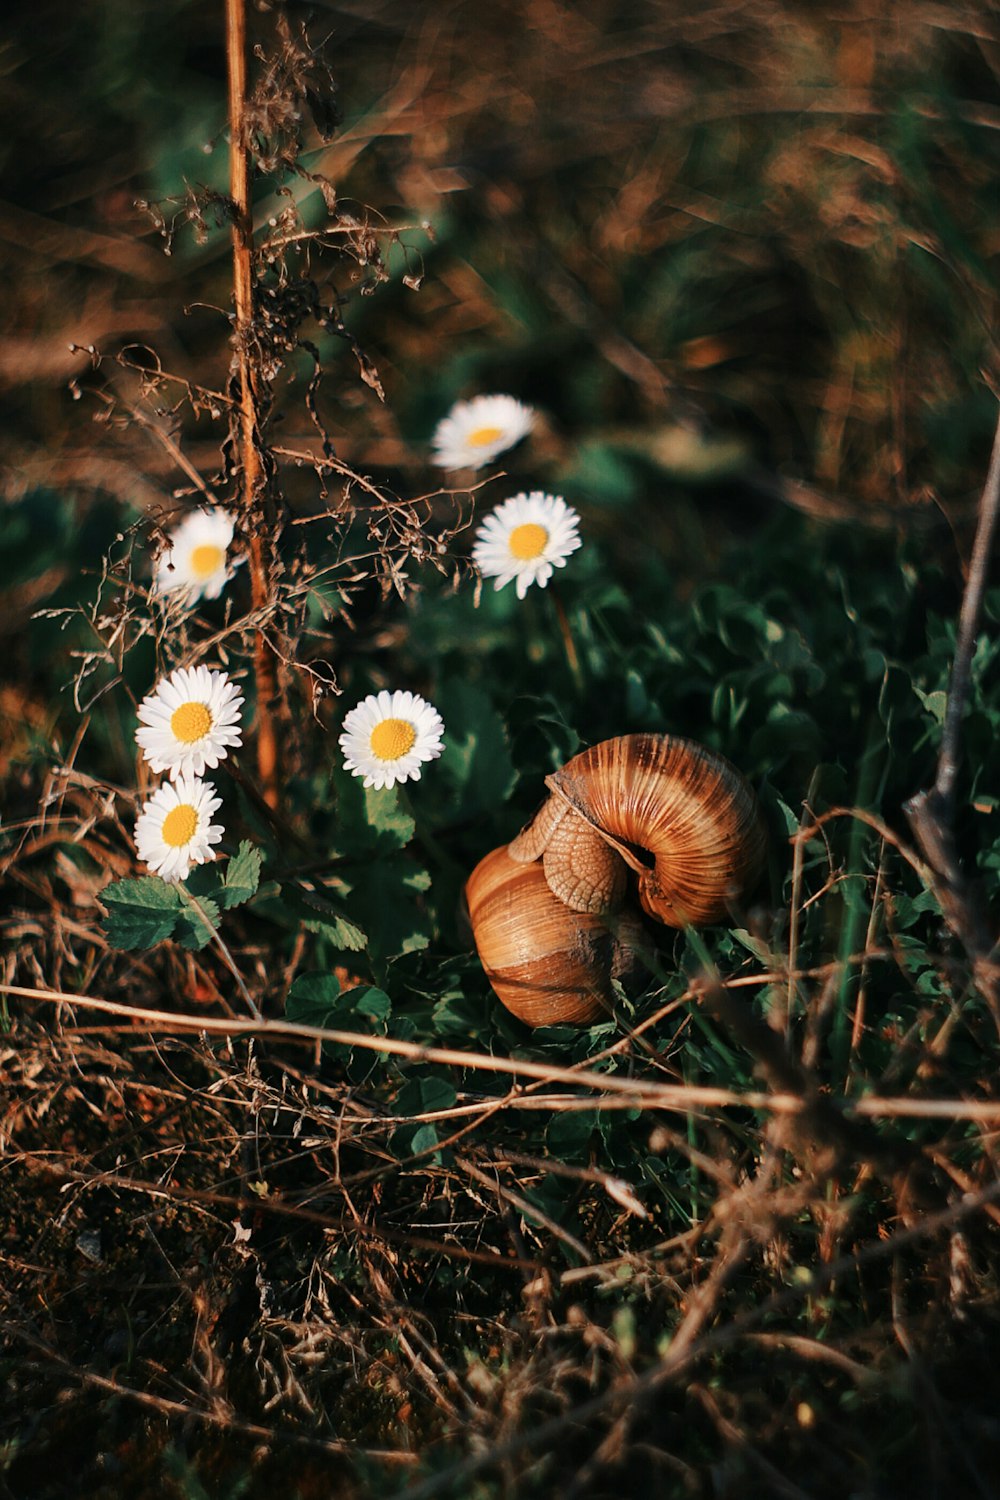 brown snail near white petaled flower